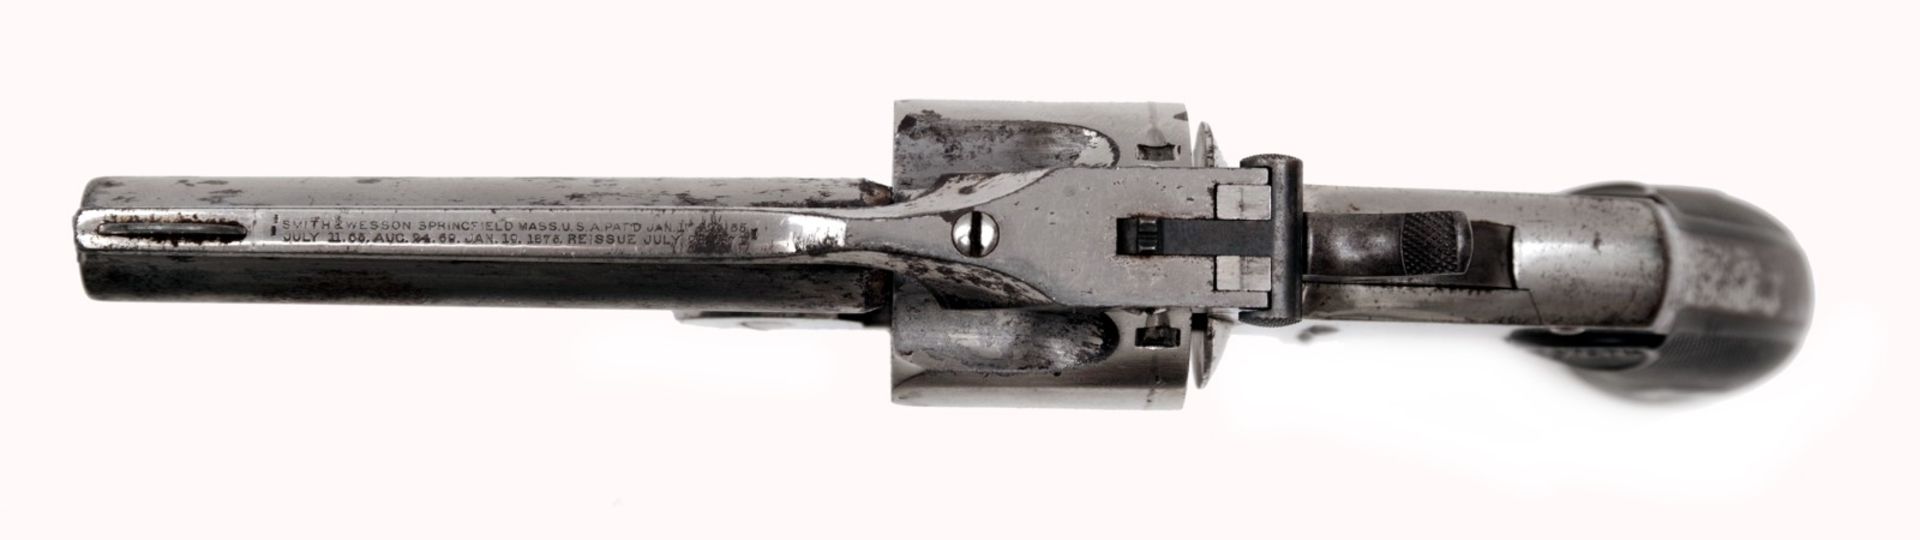 Smith & Wesson Baby Russischer Revolver - Bild 4 aus 5